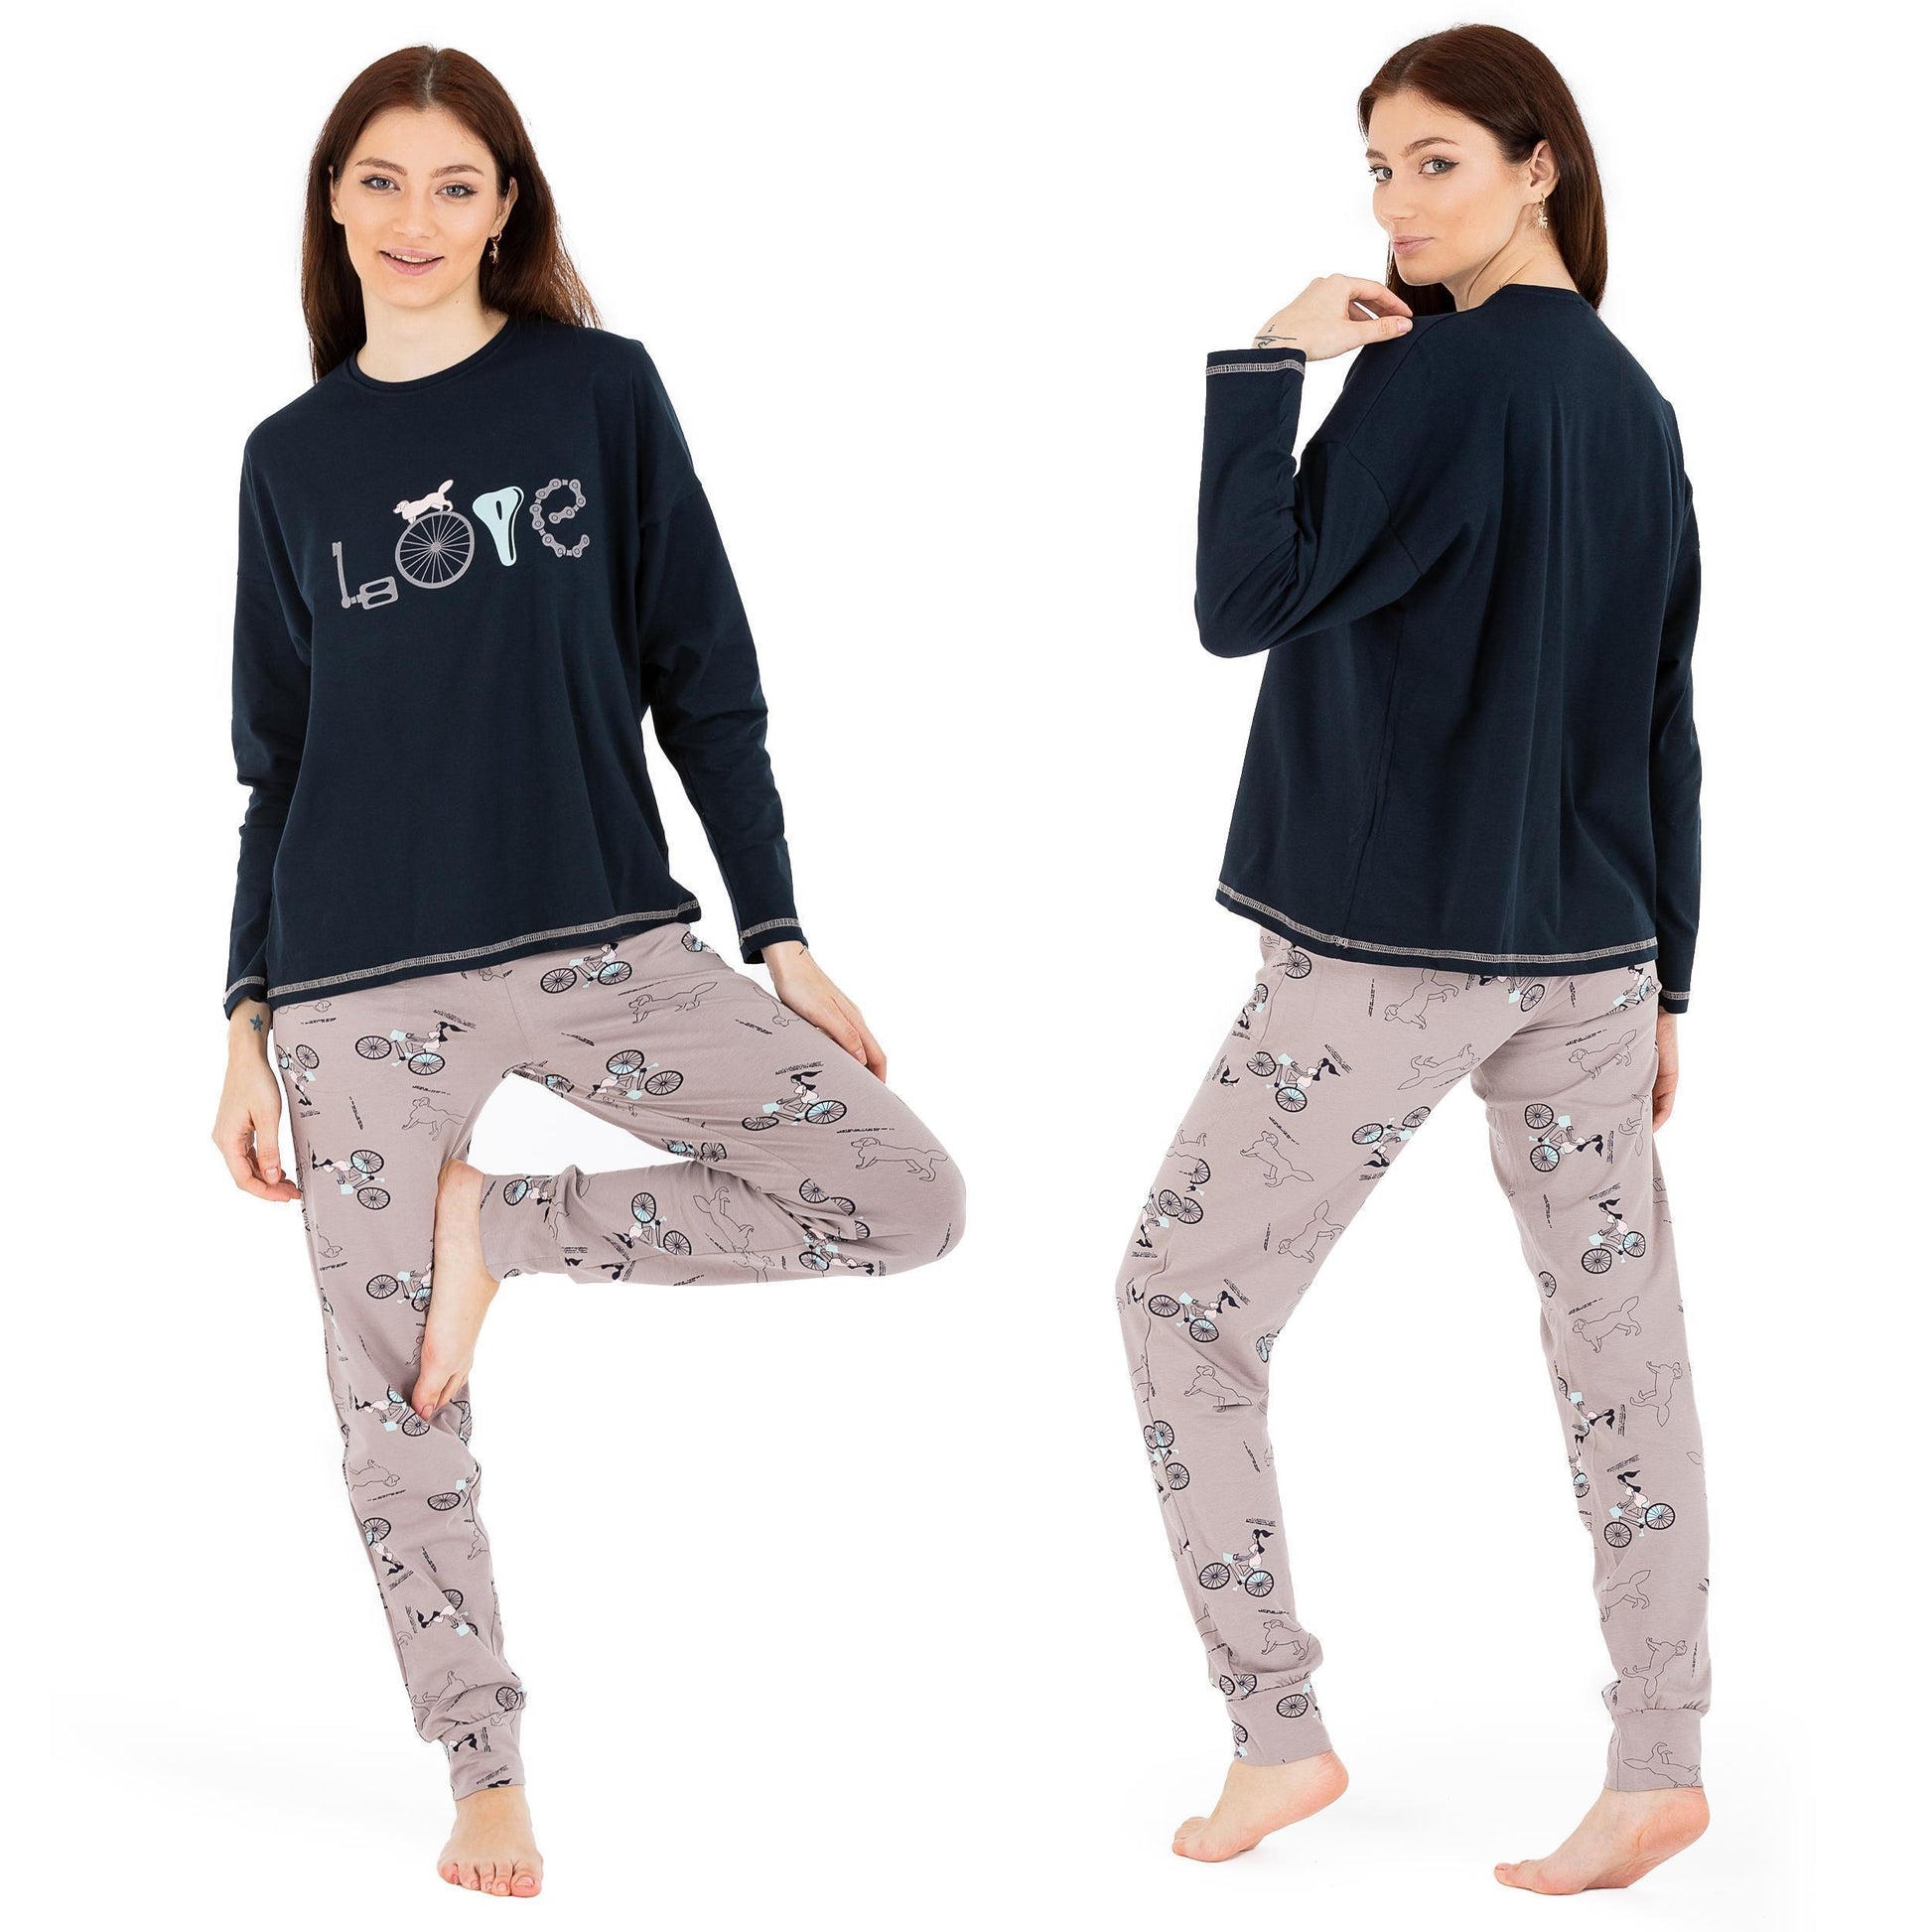 Hausanzug Damen langarm zweiteiliger Pyjama Nachtwäsche – Set S-XL LOREZA Schlafanzug